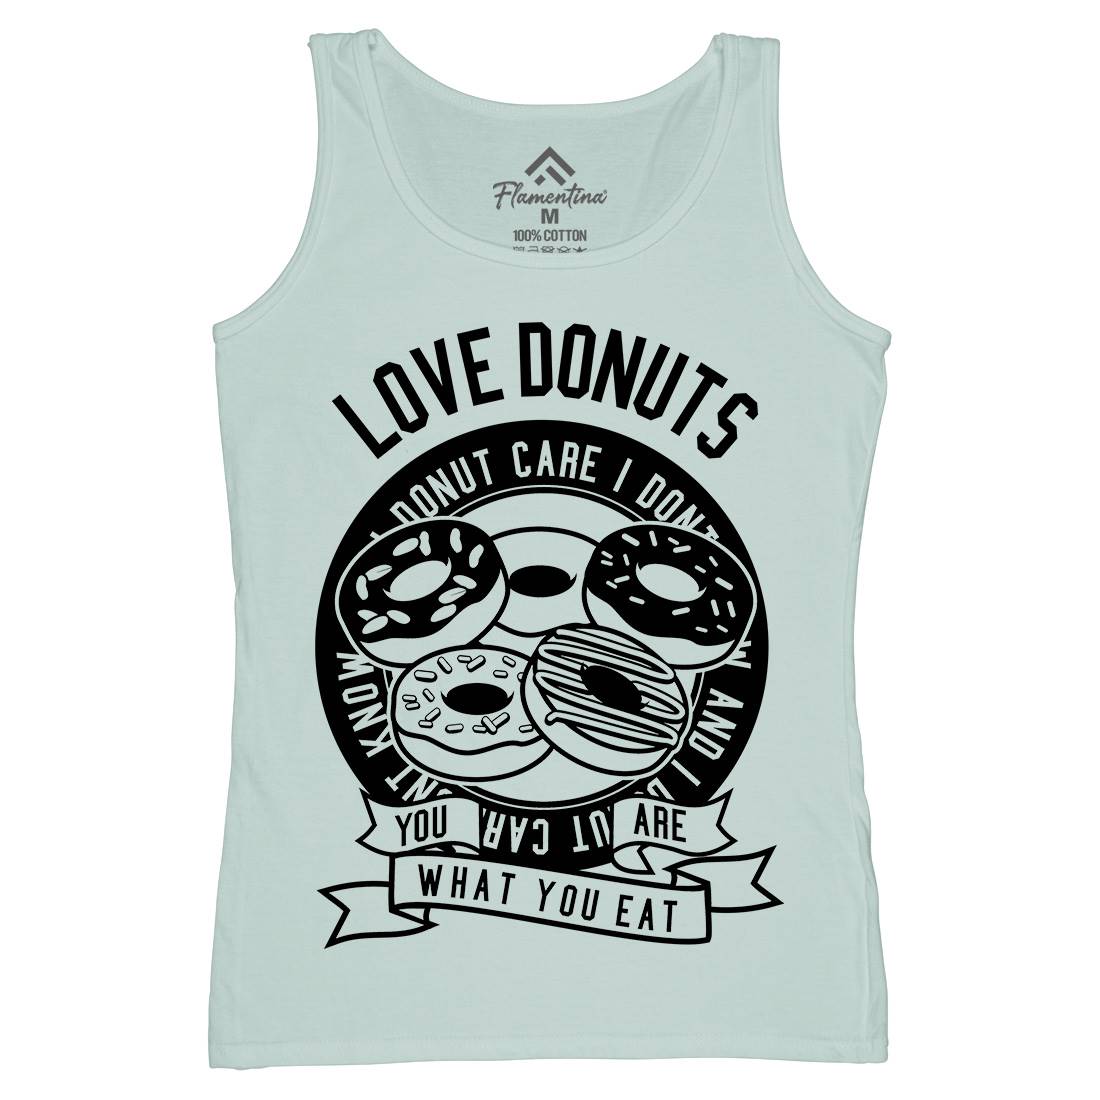 Love Donuts Womens Organic Tank Top Vest Food B572